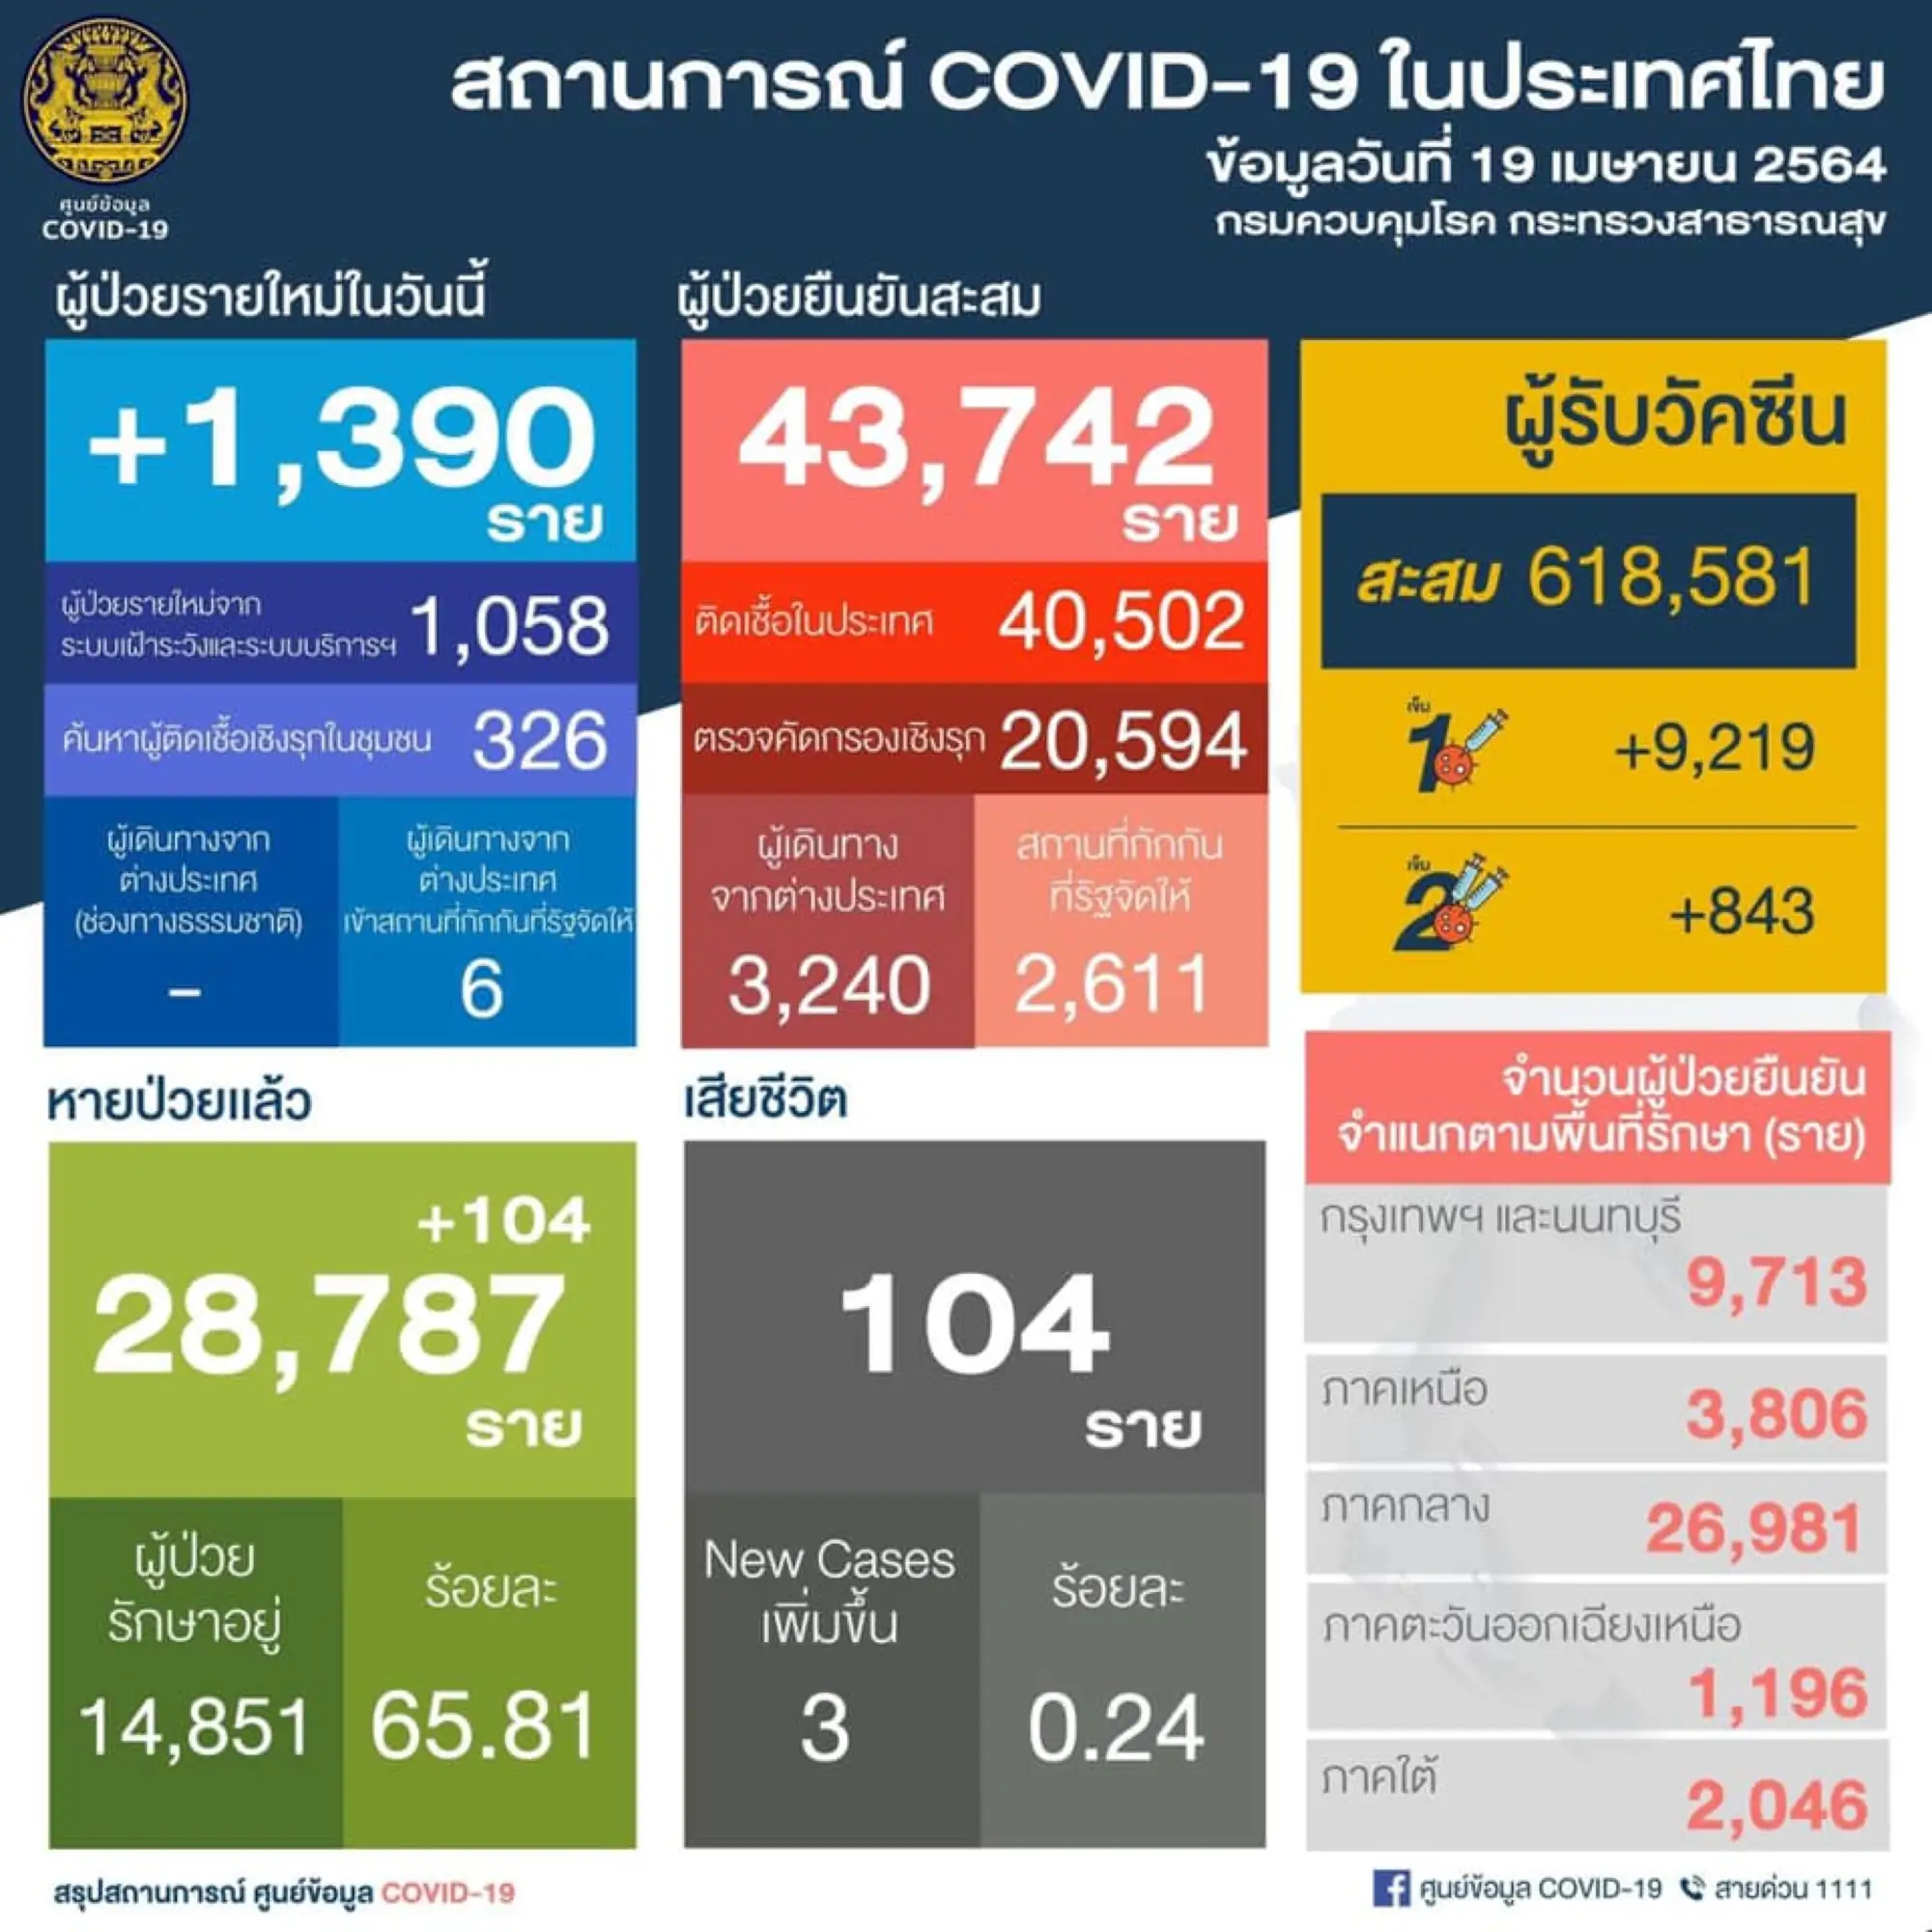 泰国疫情4月19日新增1,390例确诊 （图片来源：PR Thai Government 脸书粉丝专页）